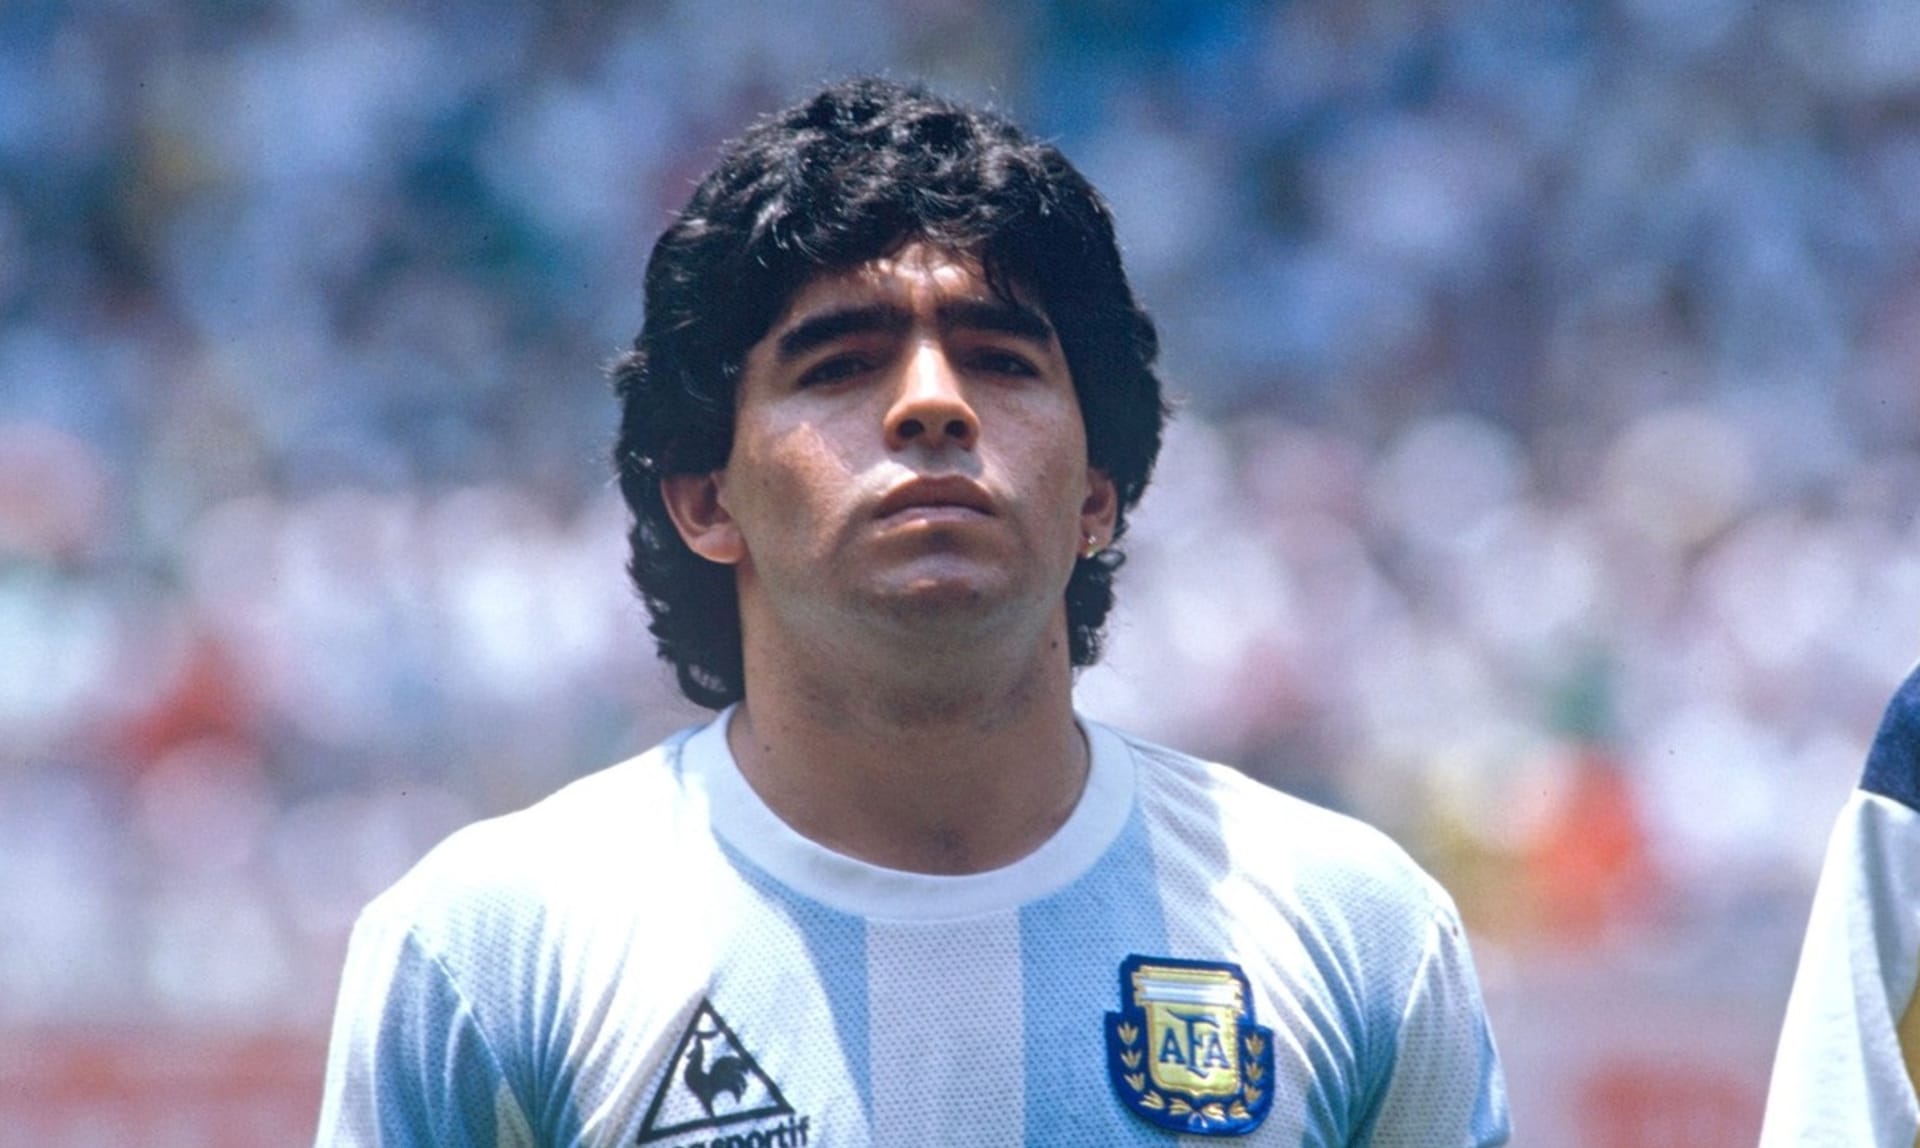 Maradona je národním symbolem. A platí to i po jeho smrti. Je to idol, říká Máximo Randrup, argentinský novinář.